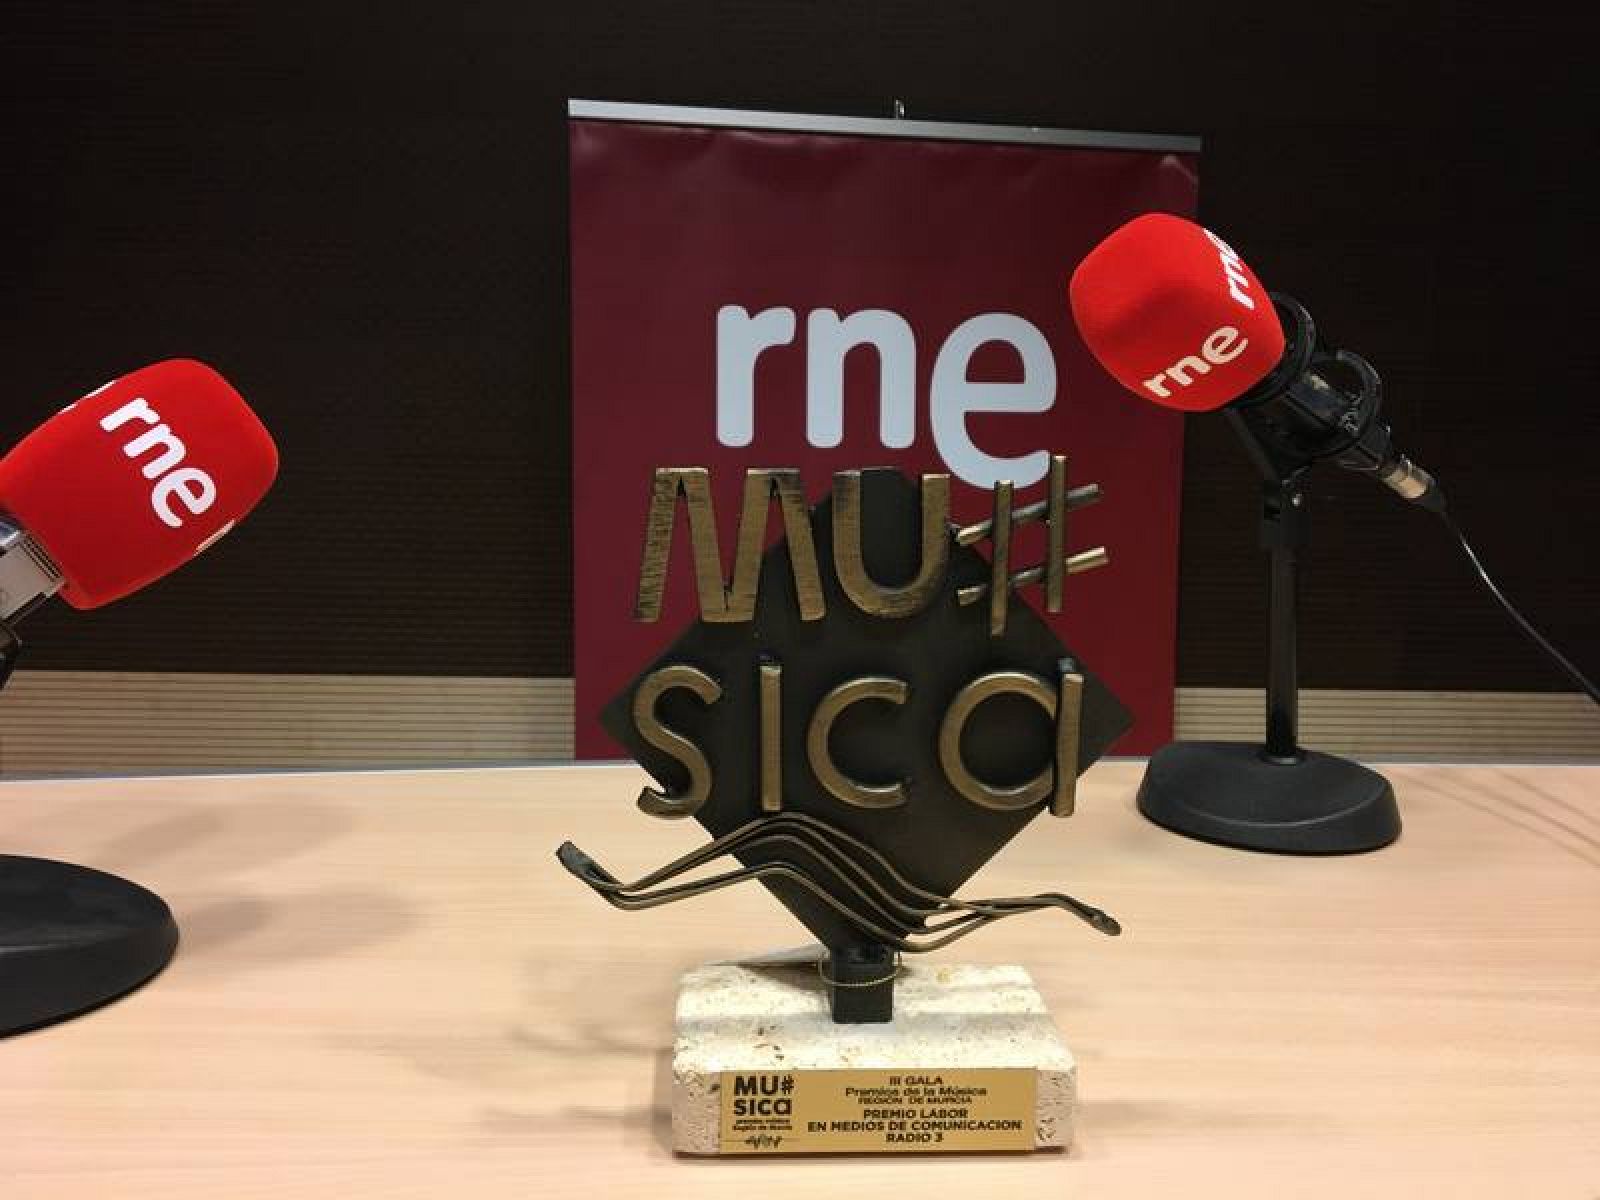  Radio 3 recibe el Premio de la Música de la Región de Murcia 2019